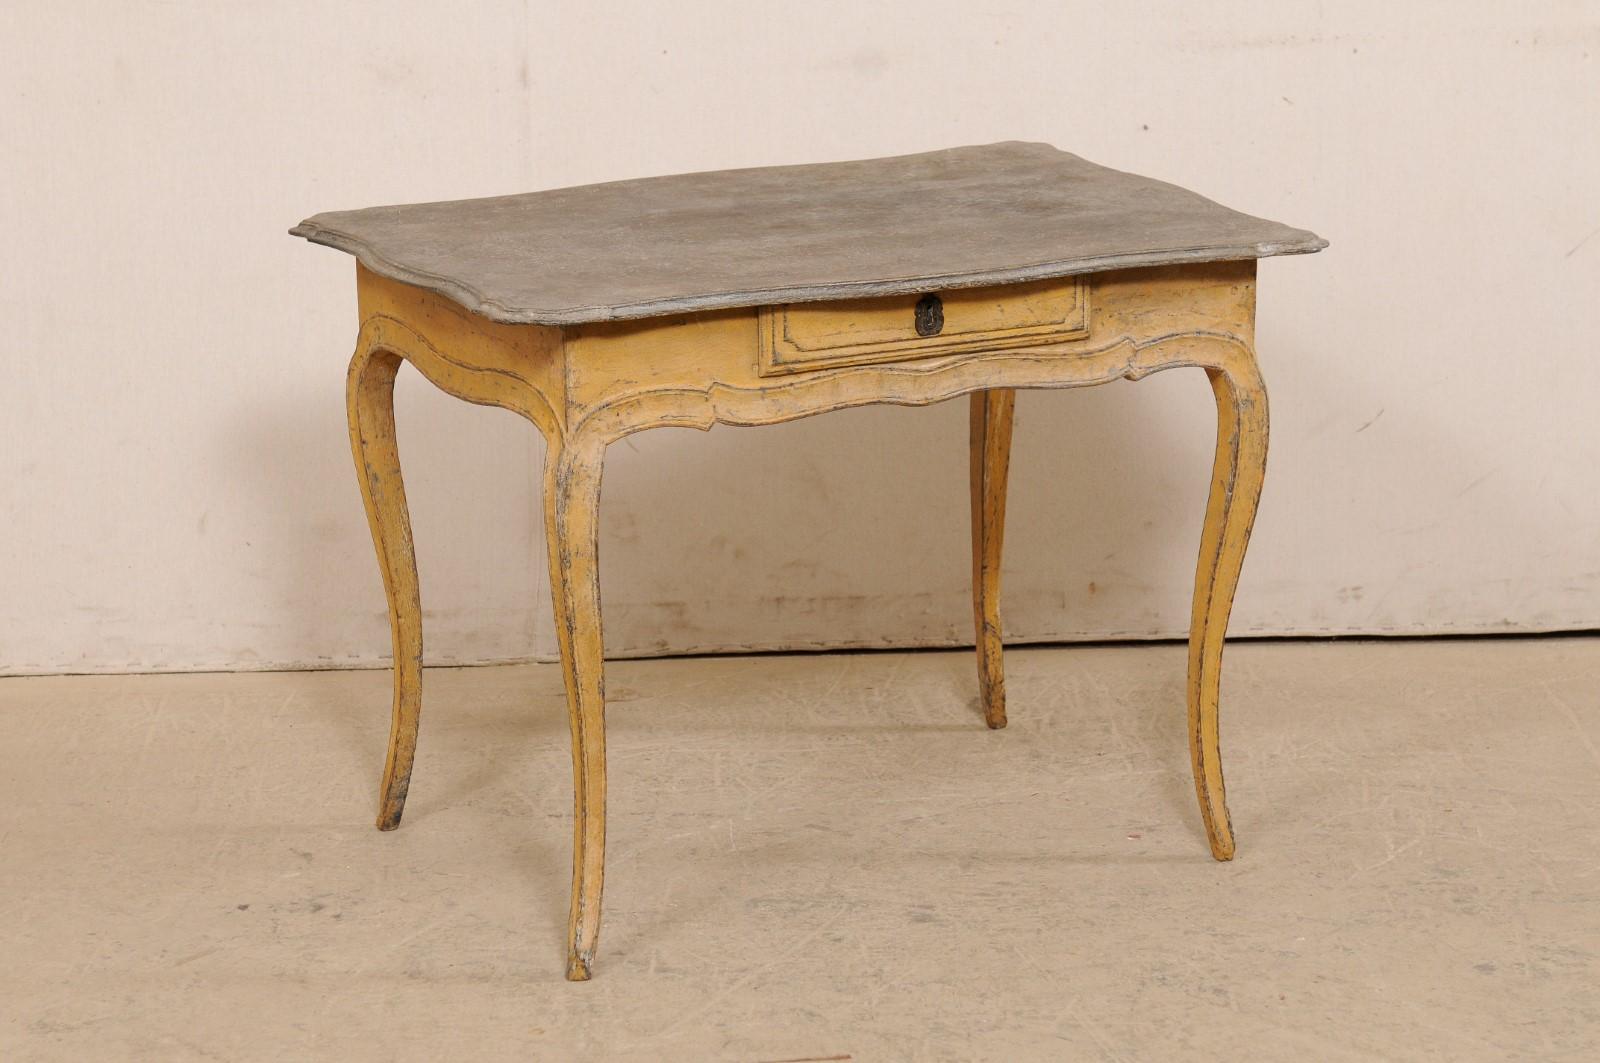 Une table française en bois peint de petite taille, avec un seul tiroir, du tournant du 18e et 19e siècle. Cette table ancienne de France présente un plateau de forme rectangulaire avec un joli bord festonné, qui surplombe le tablier festonné qui